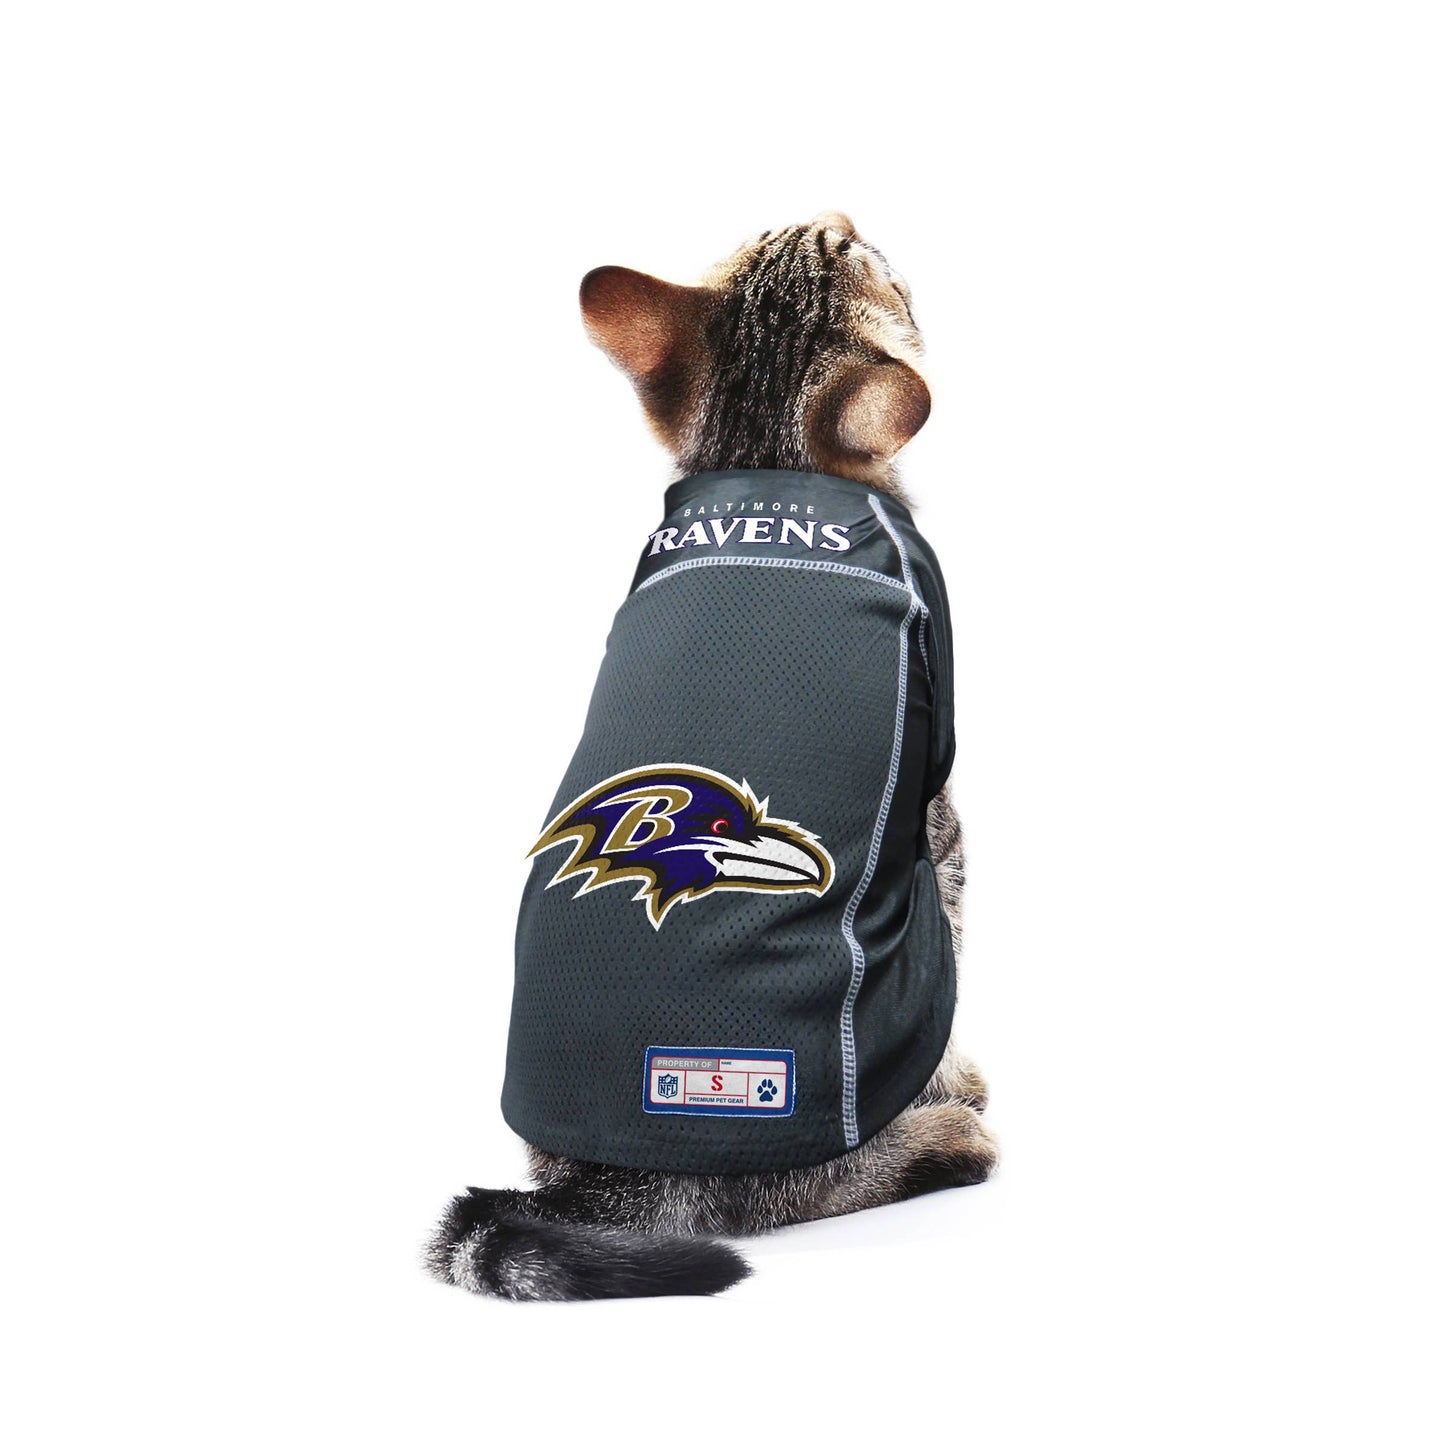 NFL Baltimore Ravens licensed Pet Jersey